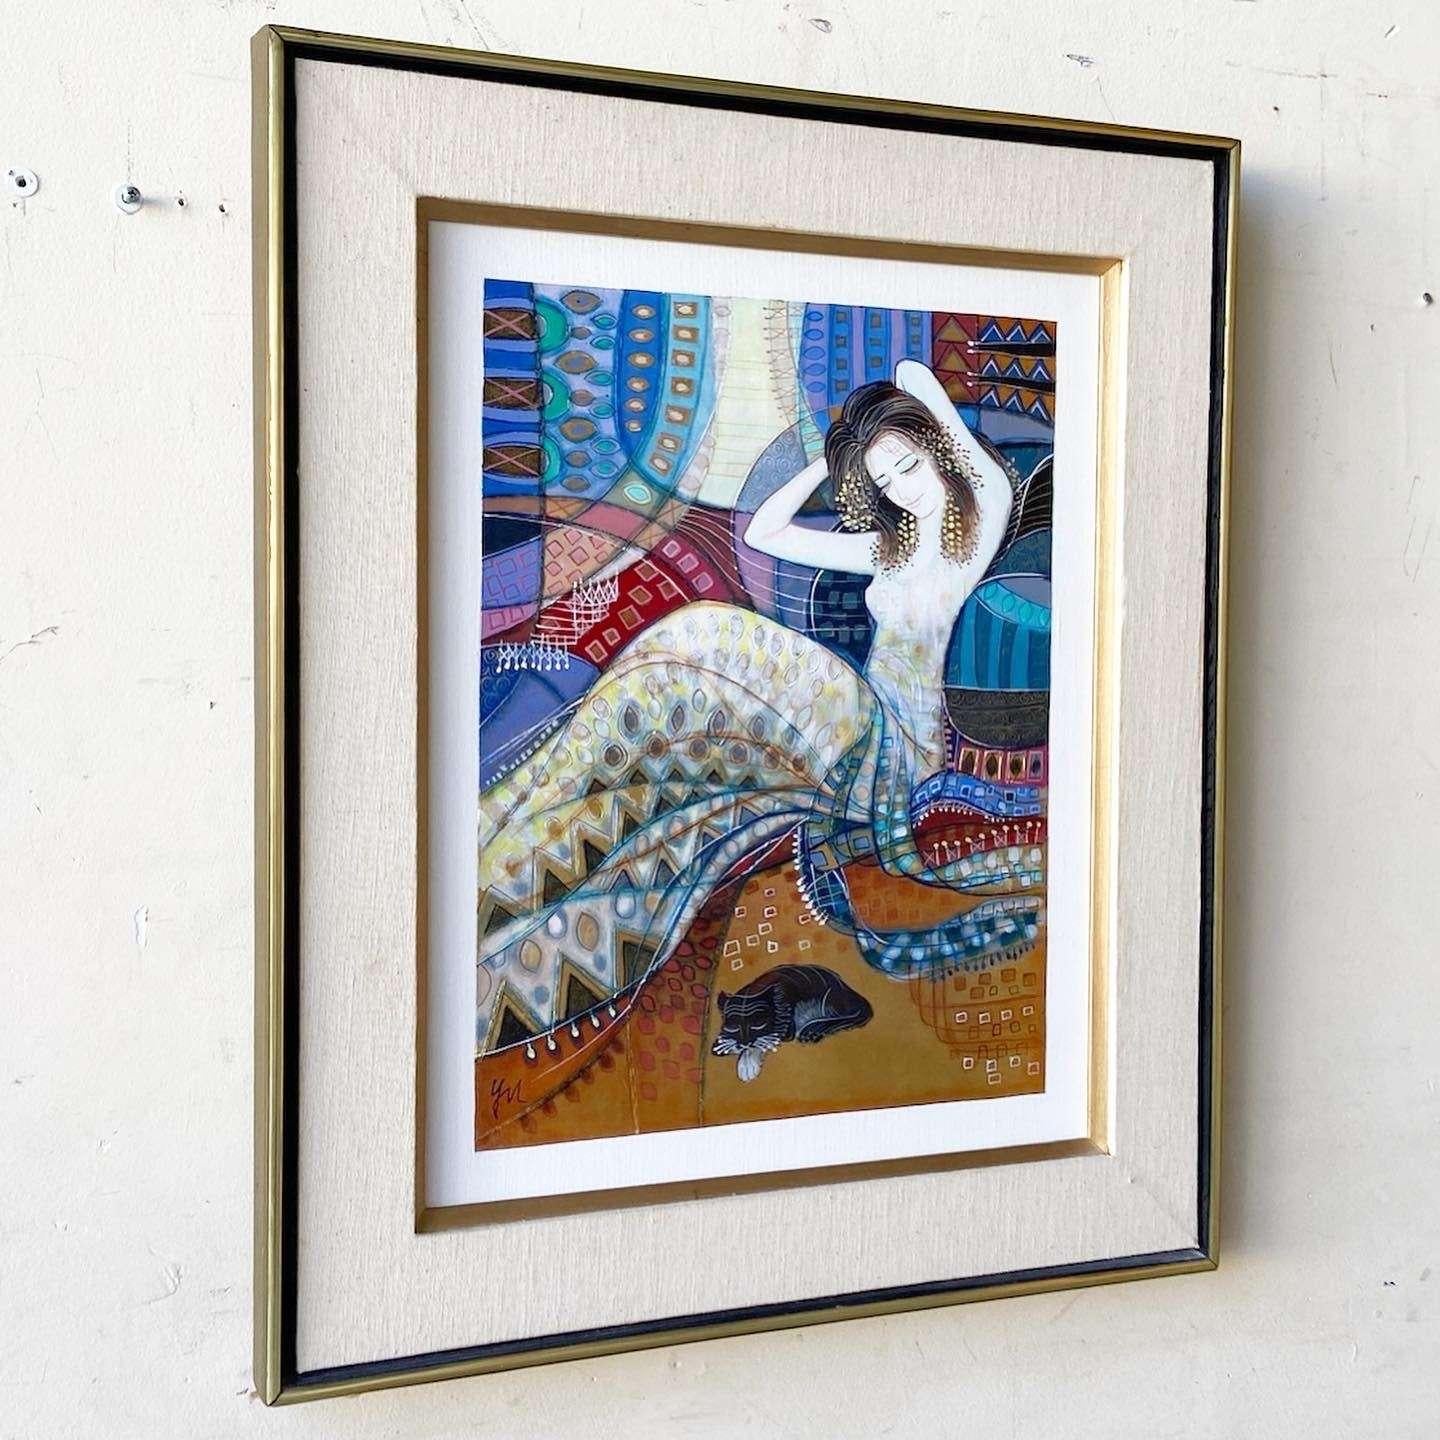 Exceptionnelle peinture à l'huile originale vintage dans un cadre en bois. Le sujet est une femme en couvertures avec un chat.
